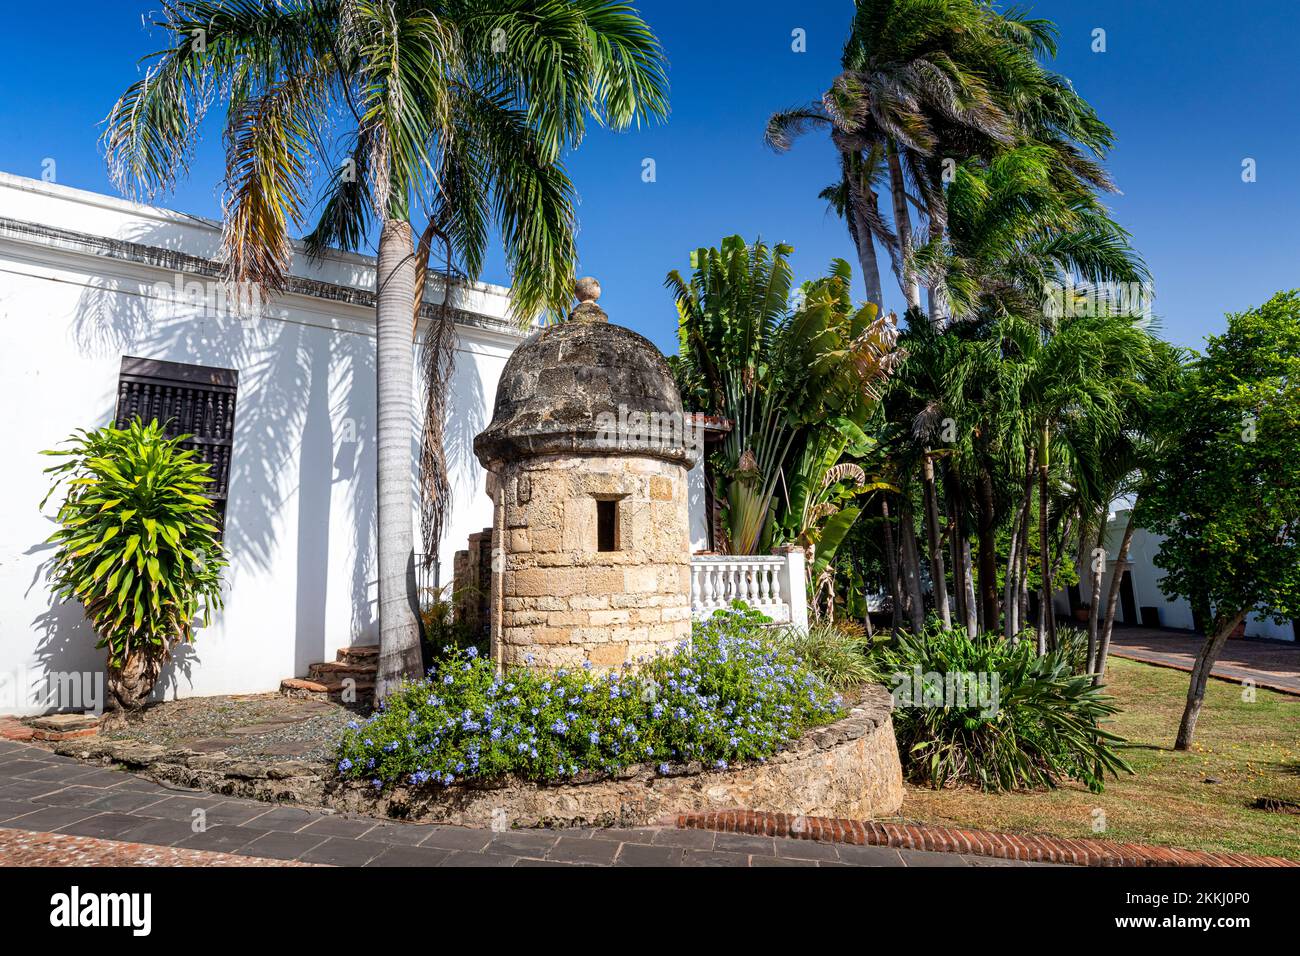 Entrada a la Casa Blanca, casa histórica de Ponce de León en el Viejo San Juan, en la isla tropical caribeña de Puerto Rico, EEUU. Foto de stock